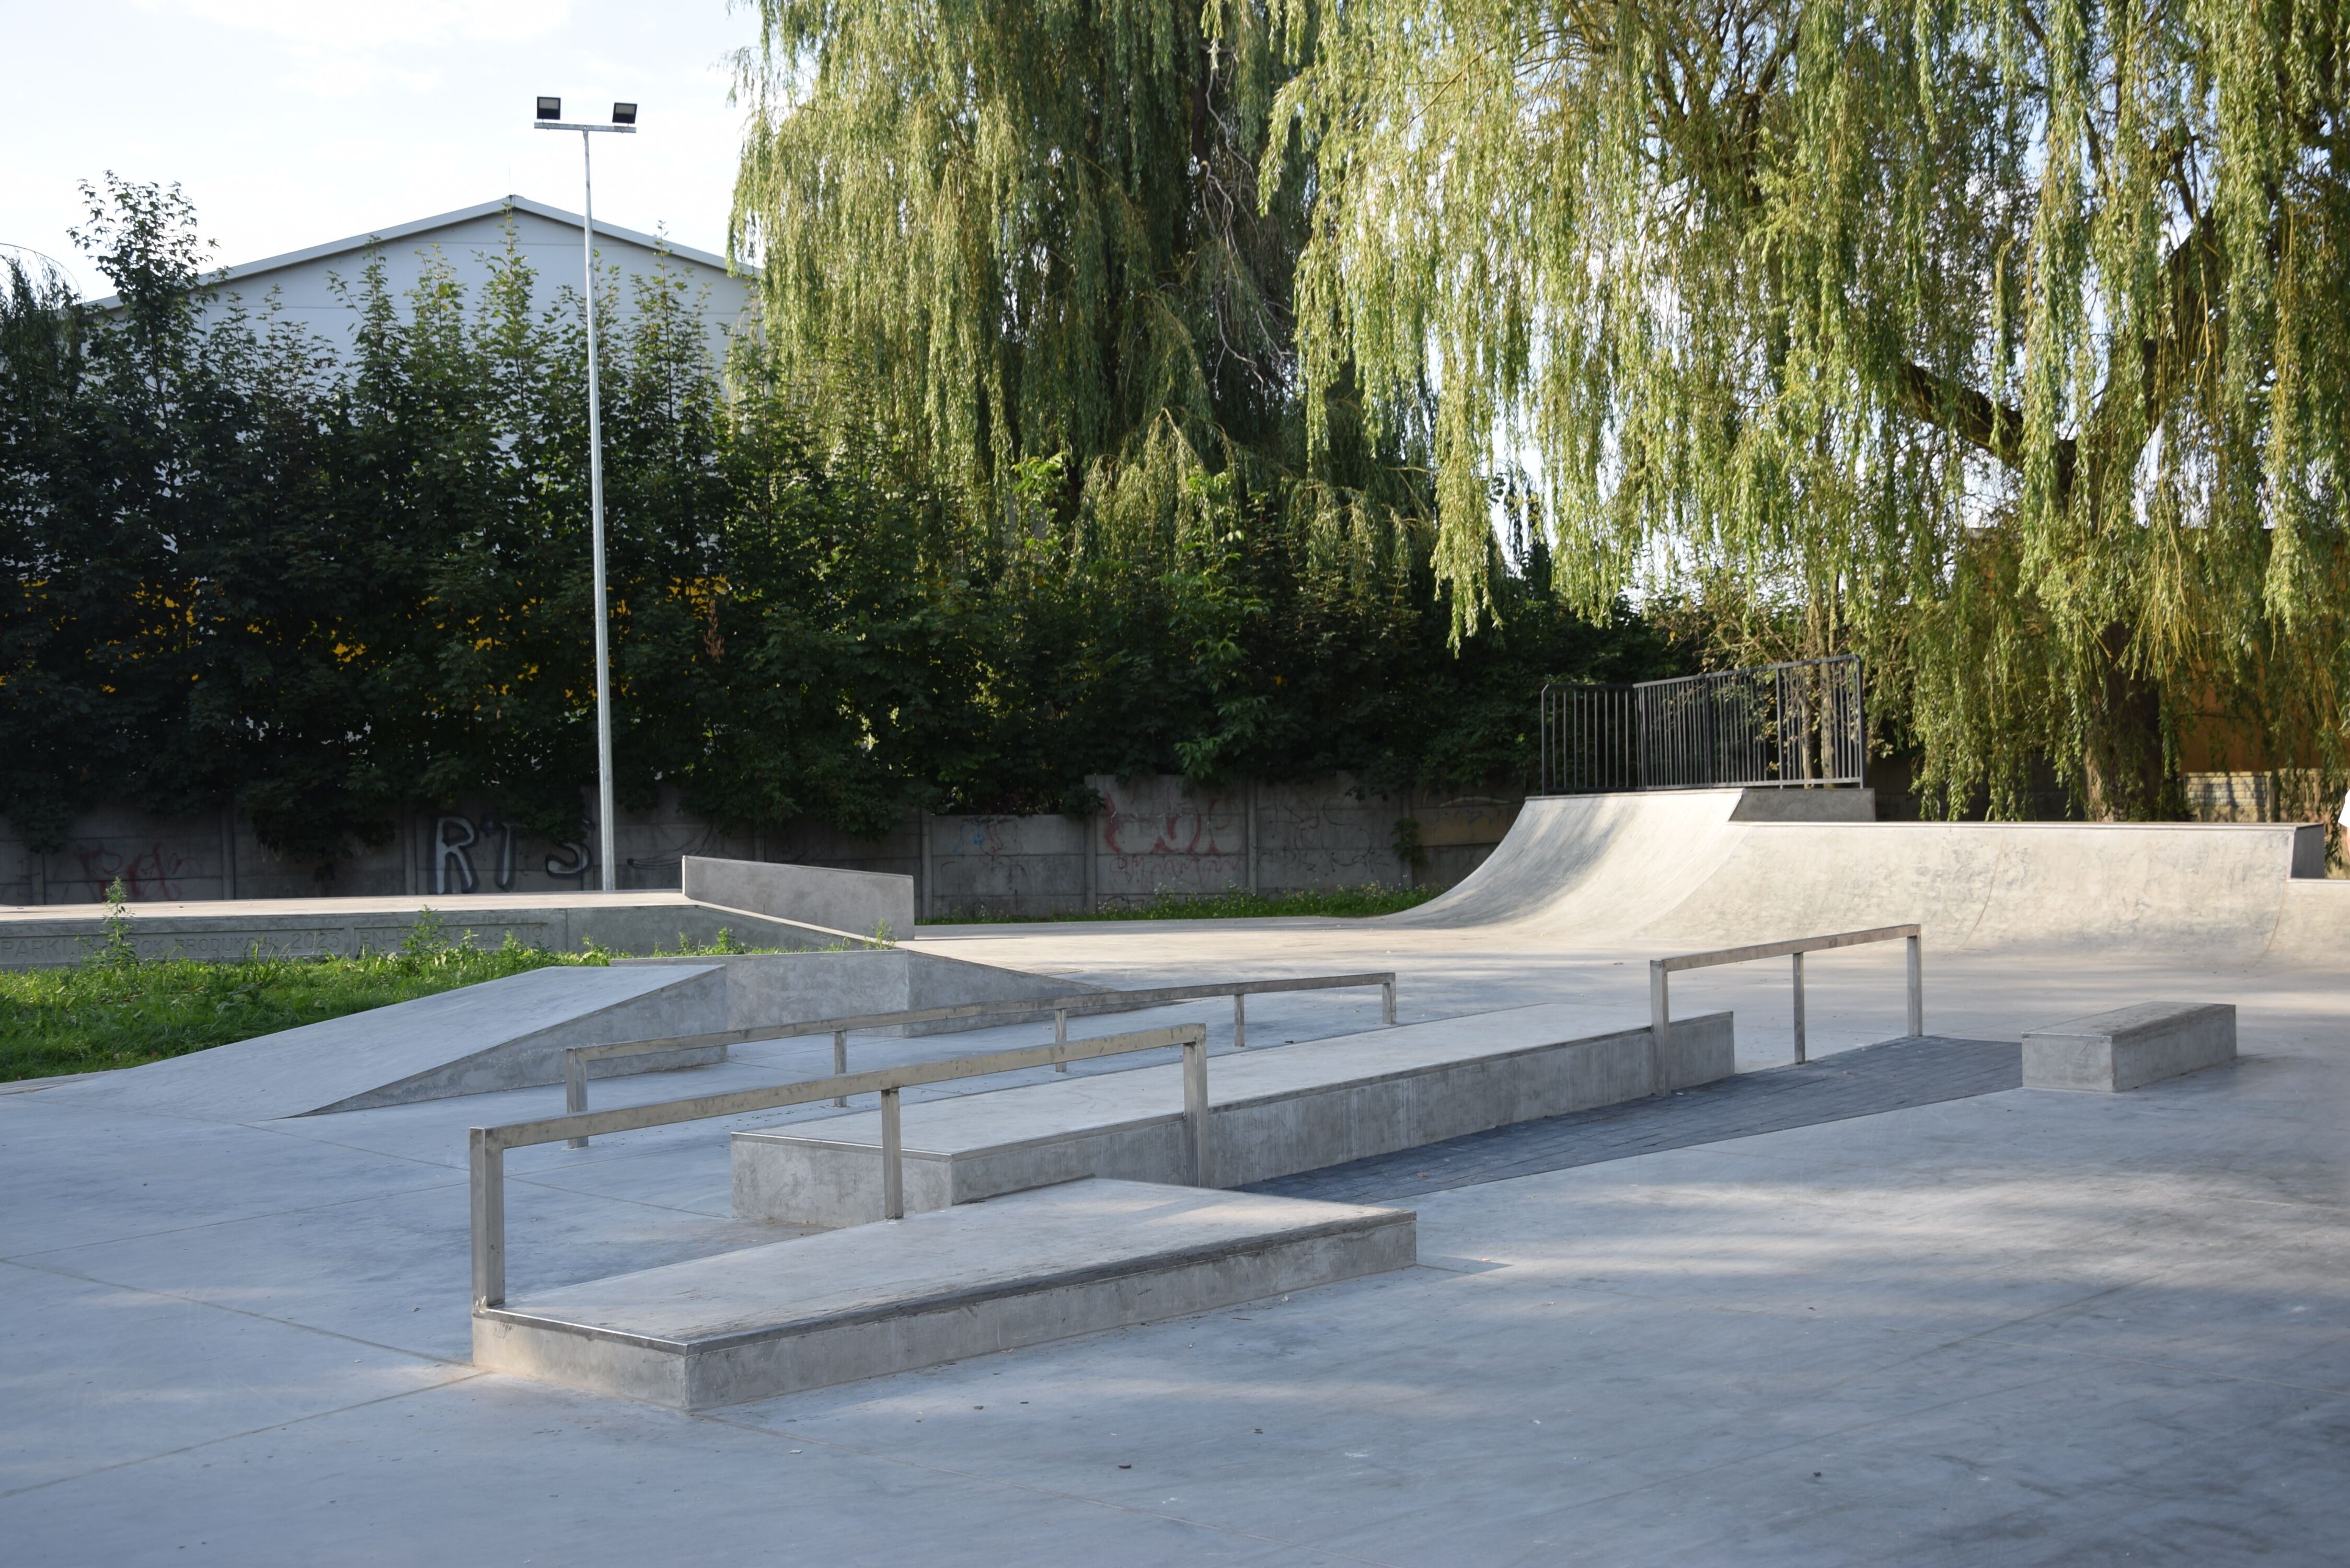 Zakończono budowę skateparku, czyli placu rekreacyjno - sportowego, przeznaczonego dla użytkowników deskorolek i rolek